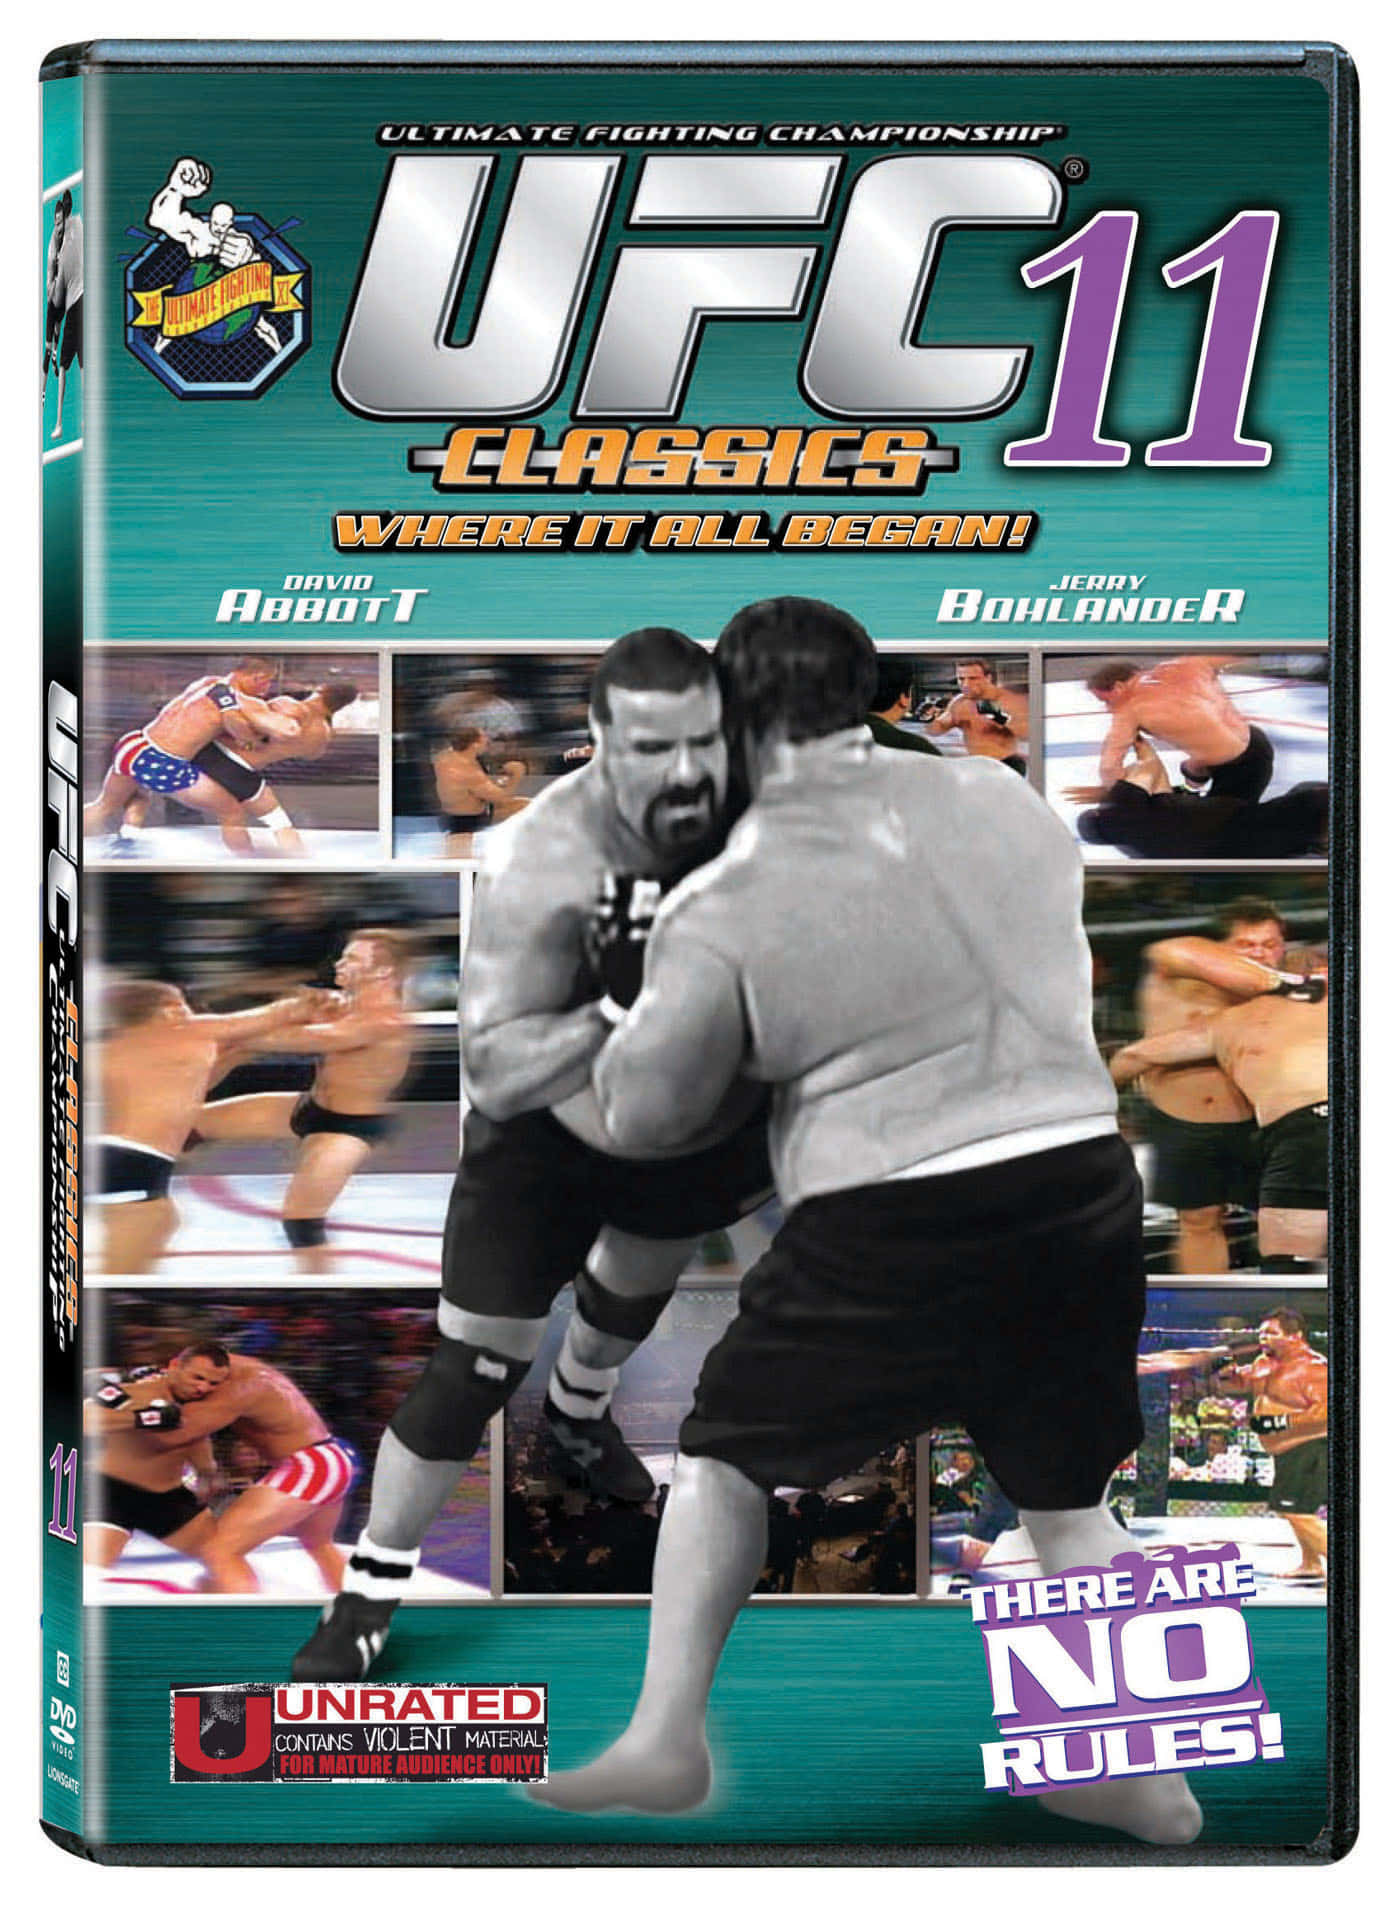 Amerikansk MMA Fighter David Abbott UFC 11. Wallpaper